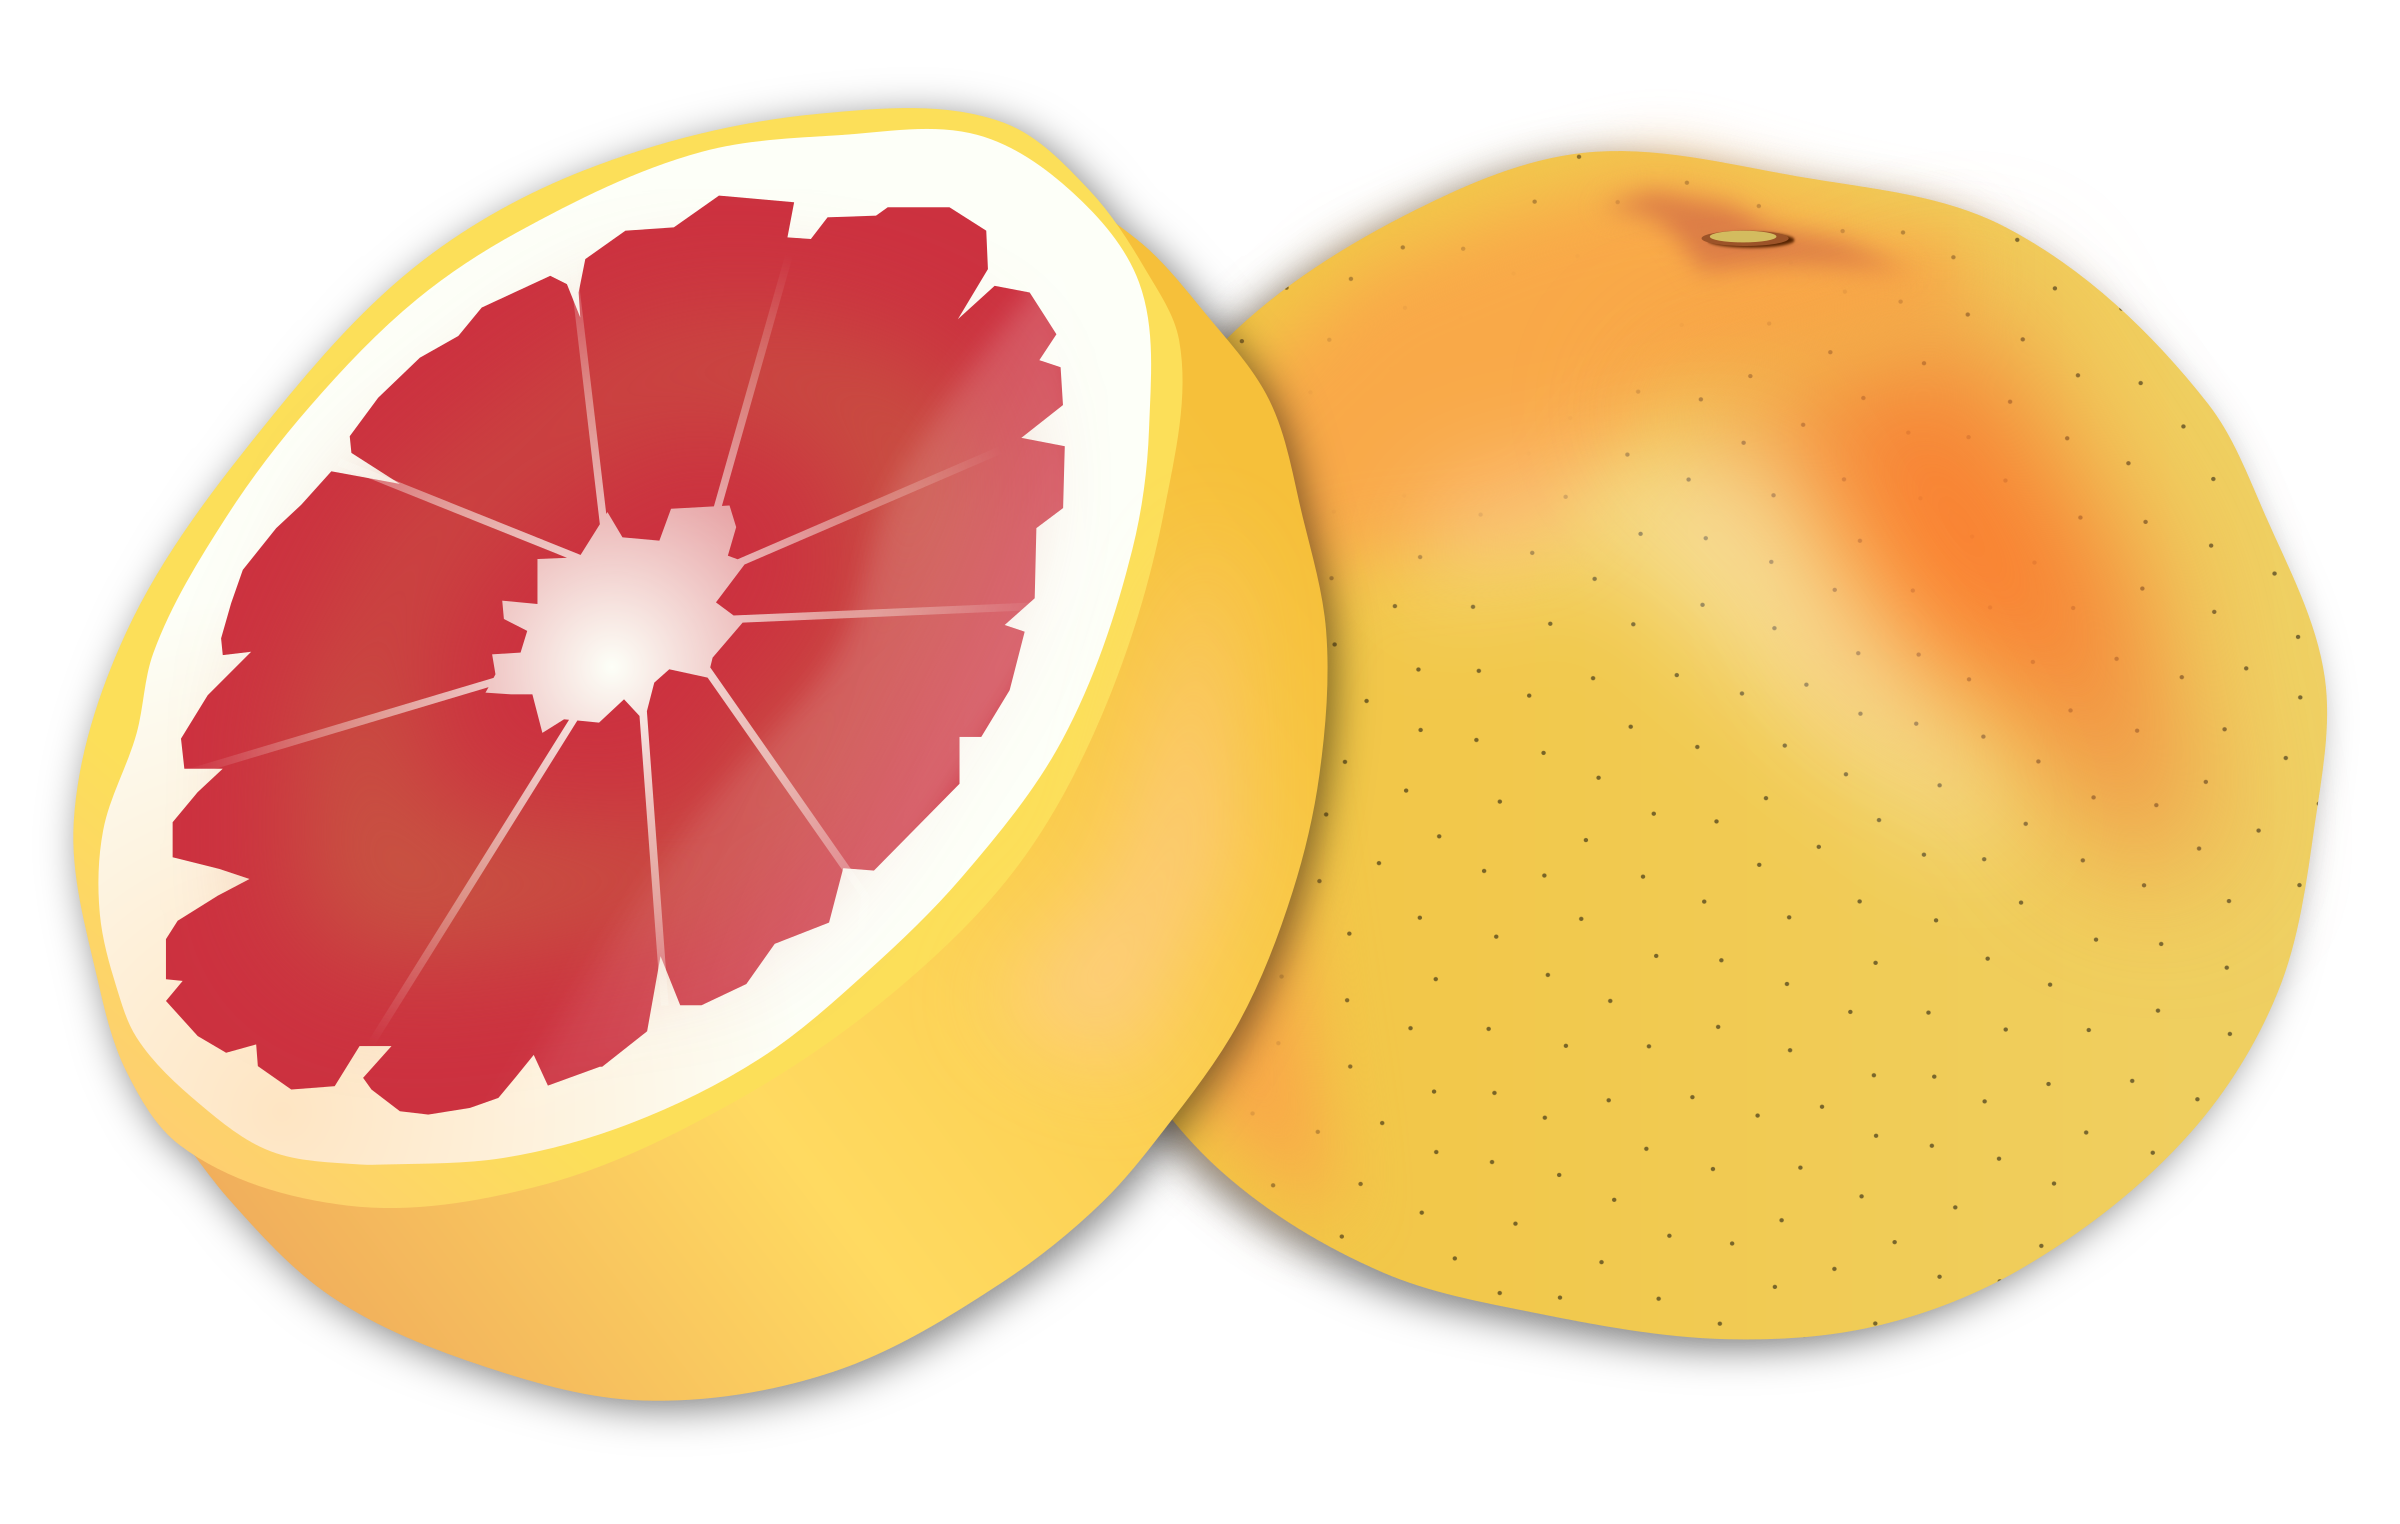 Grapefruit PNG Image